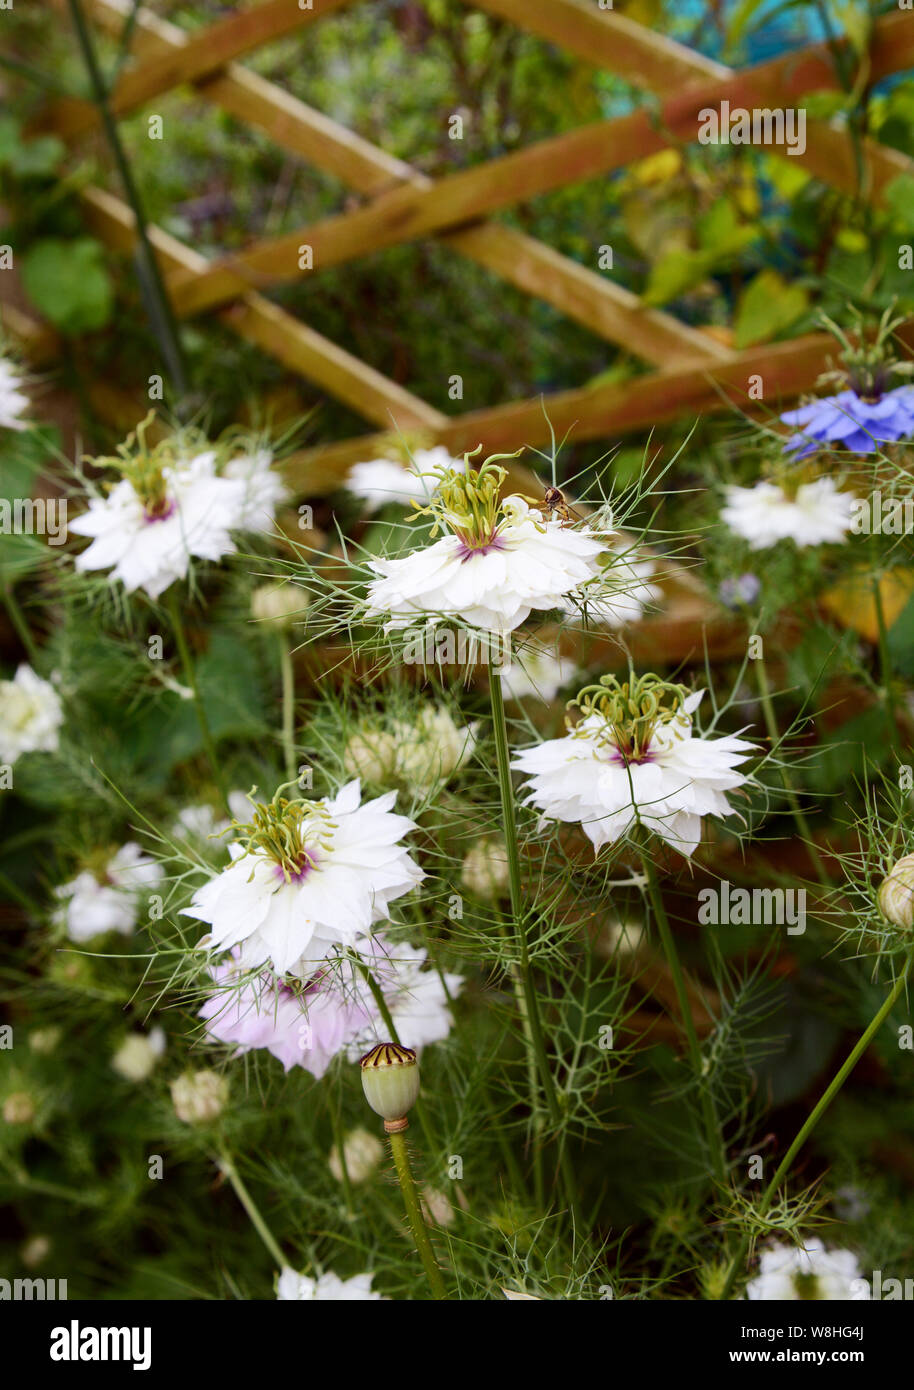 L'amour blanc dans un brouillard - nigella - fleurs entouré de feuillage frondy, croissante à l'encontre d'un treillis en bois Banque D'Images